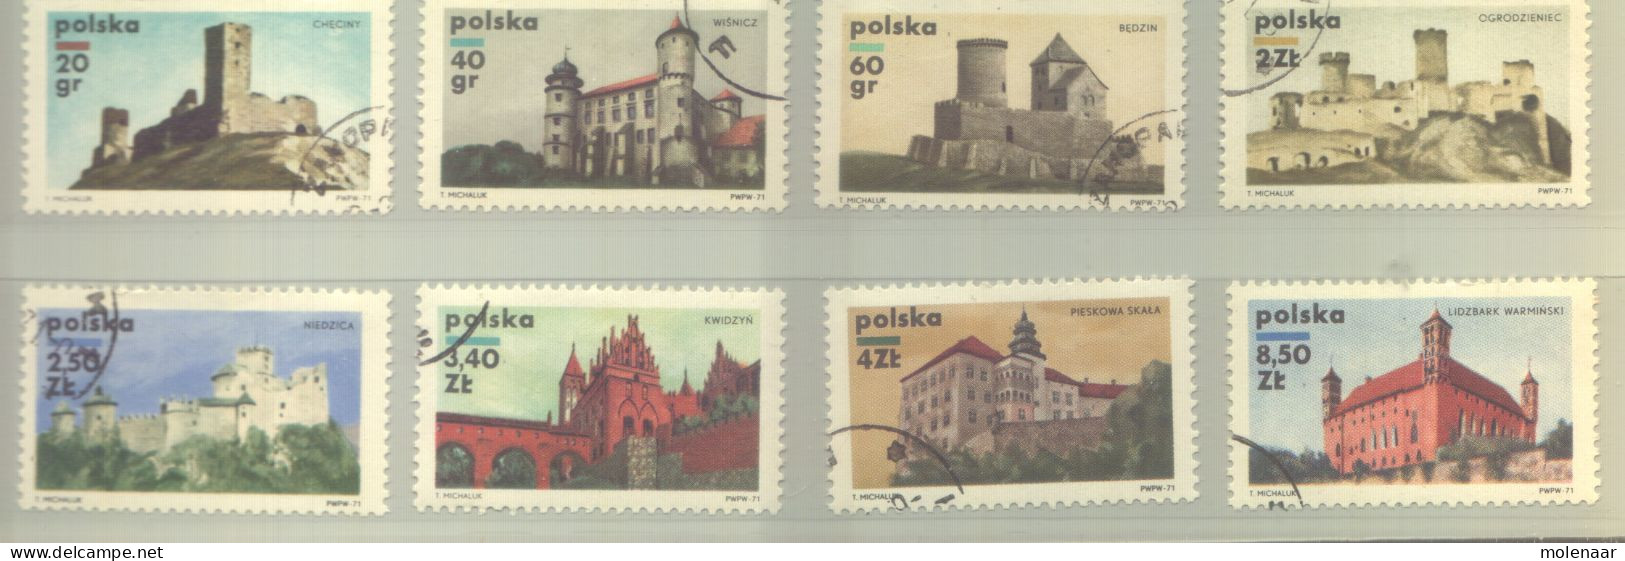 Postzegels > Europa > Polen > 1944-.... Republiek > 1981-90 > Gebruikt 2054-2061 (12190) - Usati